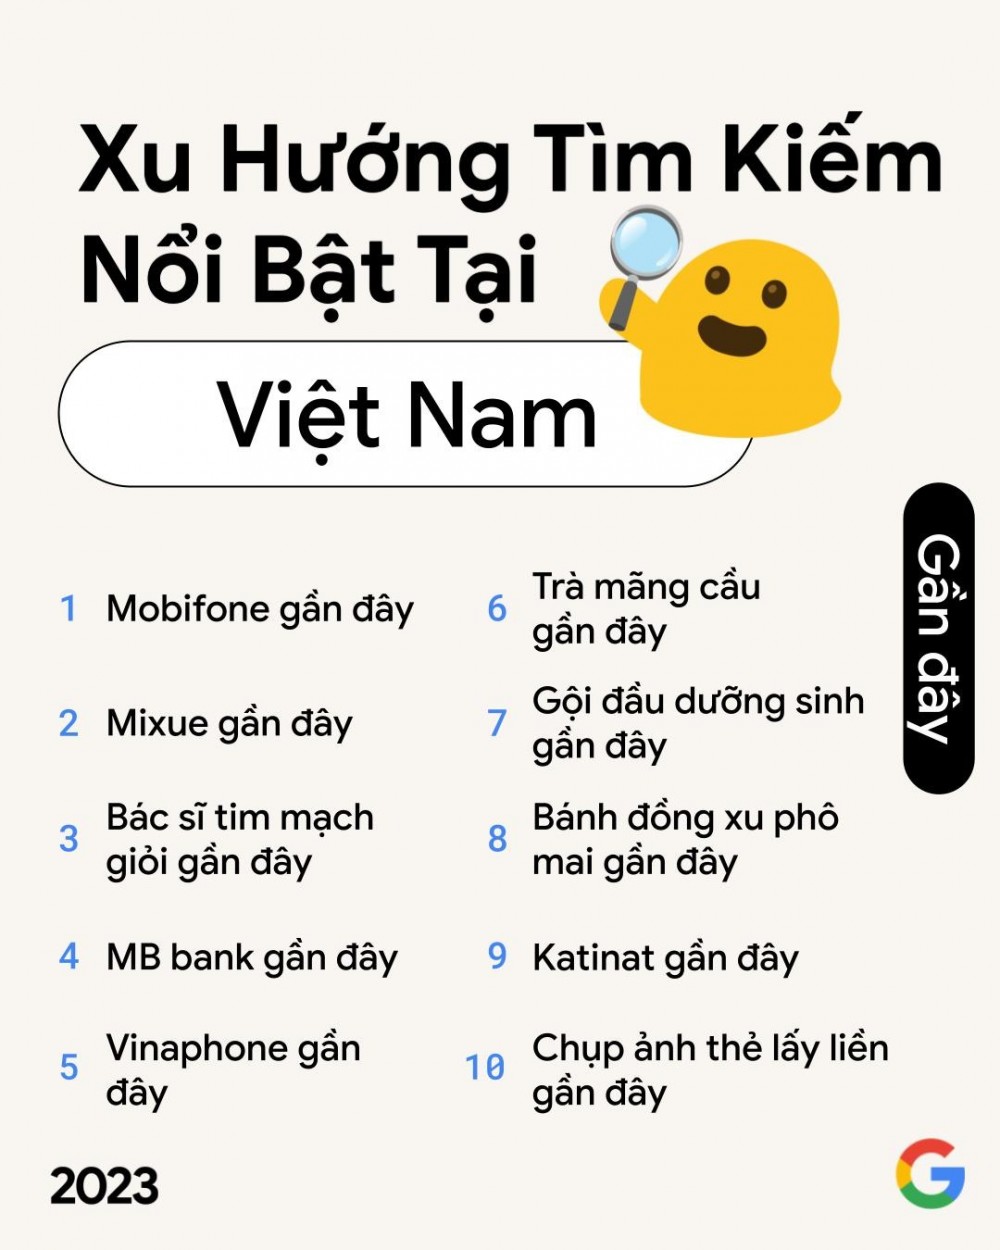 Người Việt tìm kiếm gì nhiều nhất năm qua?